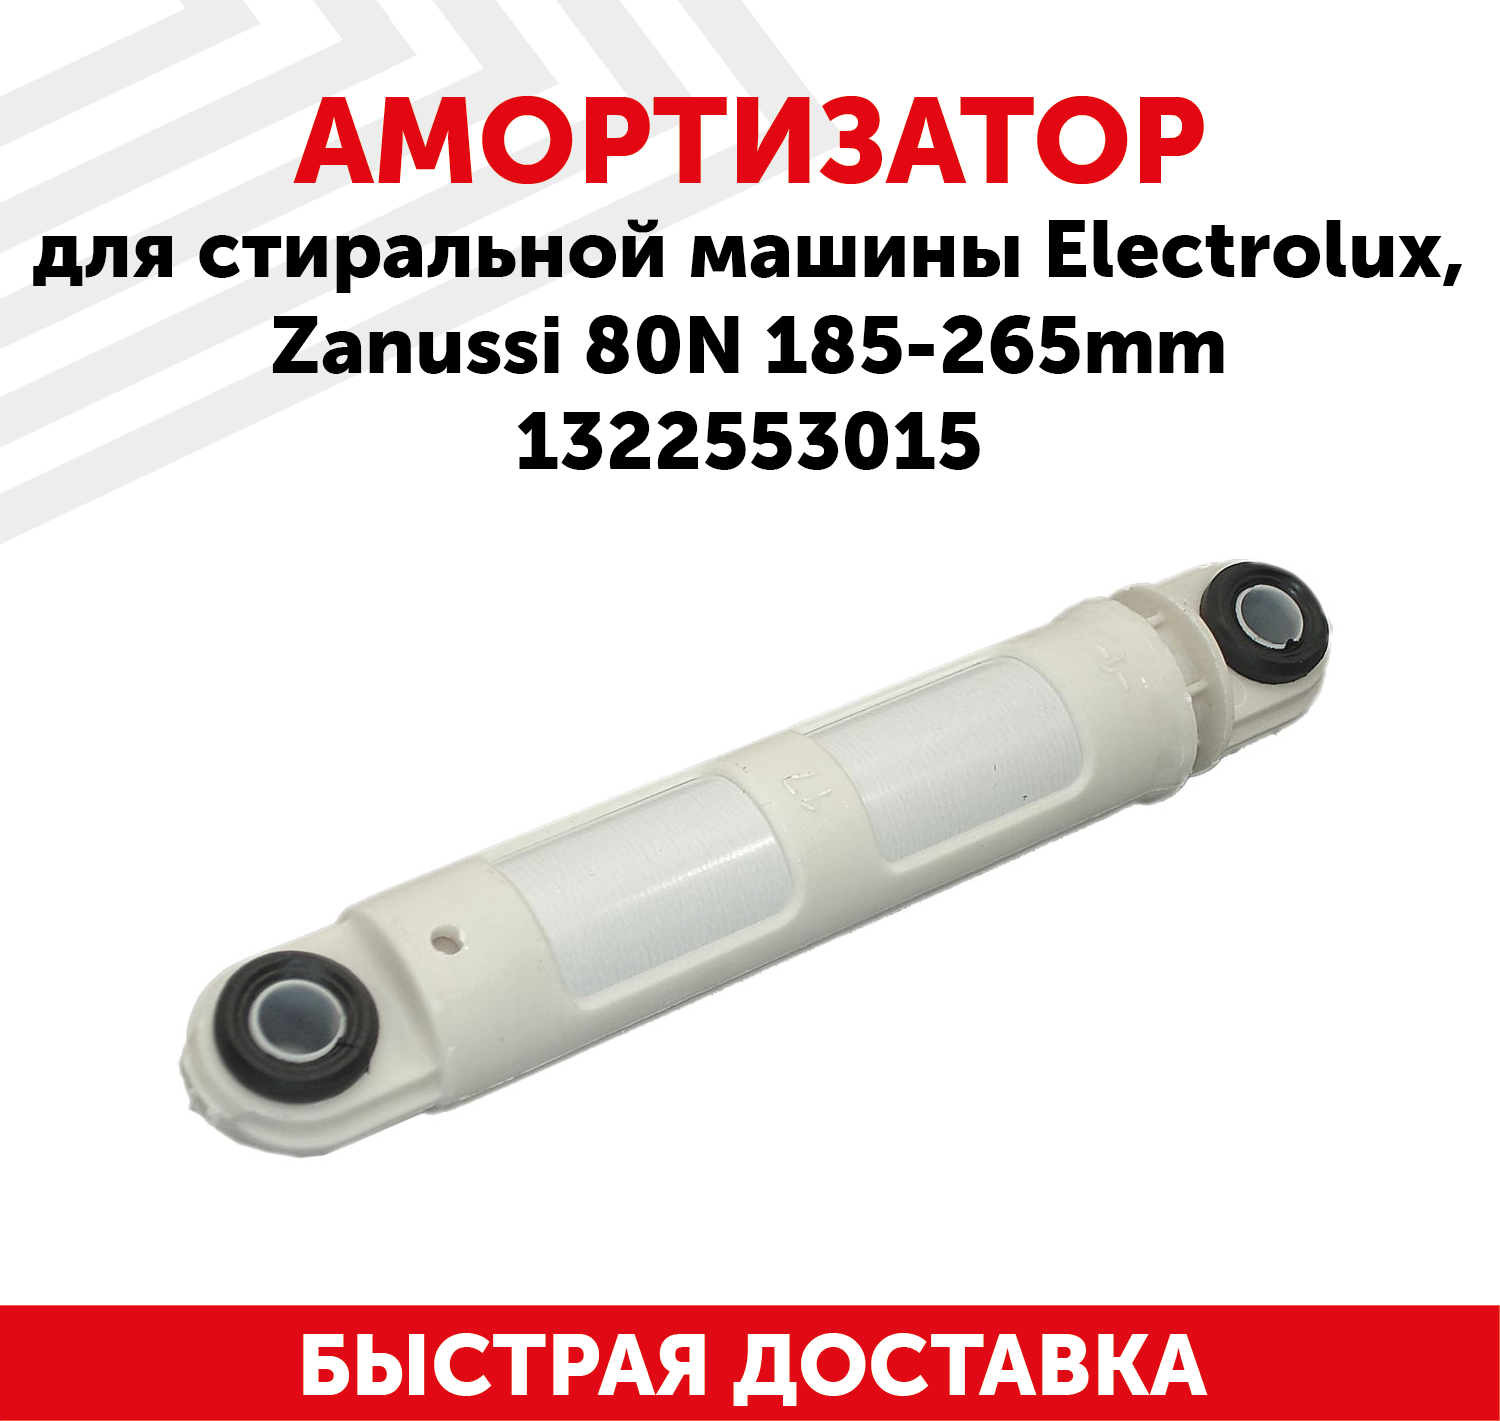 Амортизатор для стиральной машины Electrolux, Zanussi 80N, 185-265мм, 1322553015